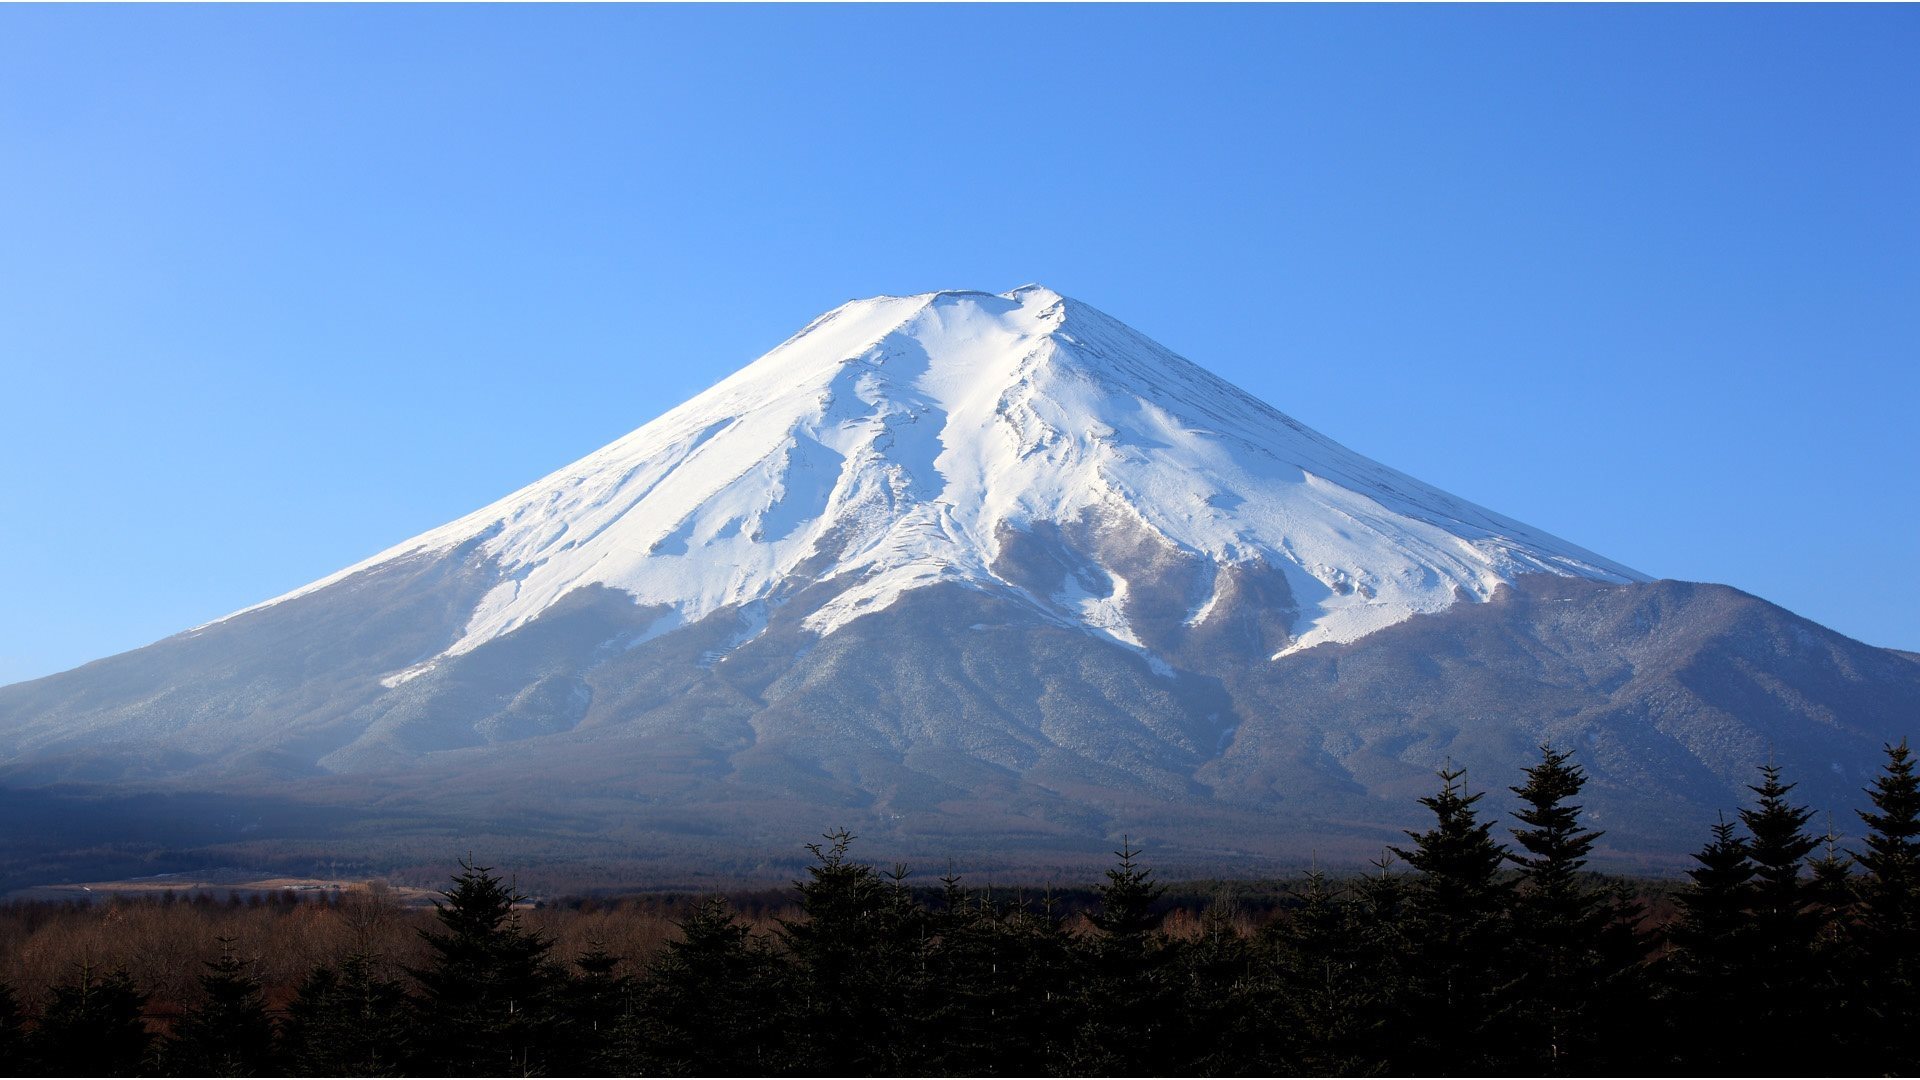 下載壁紙上 富士山参加比赛 雪 富士山 日本顯示器 分辨率19x1080 在桌面上的圖像